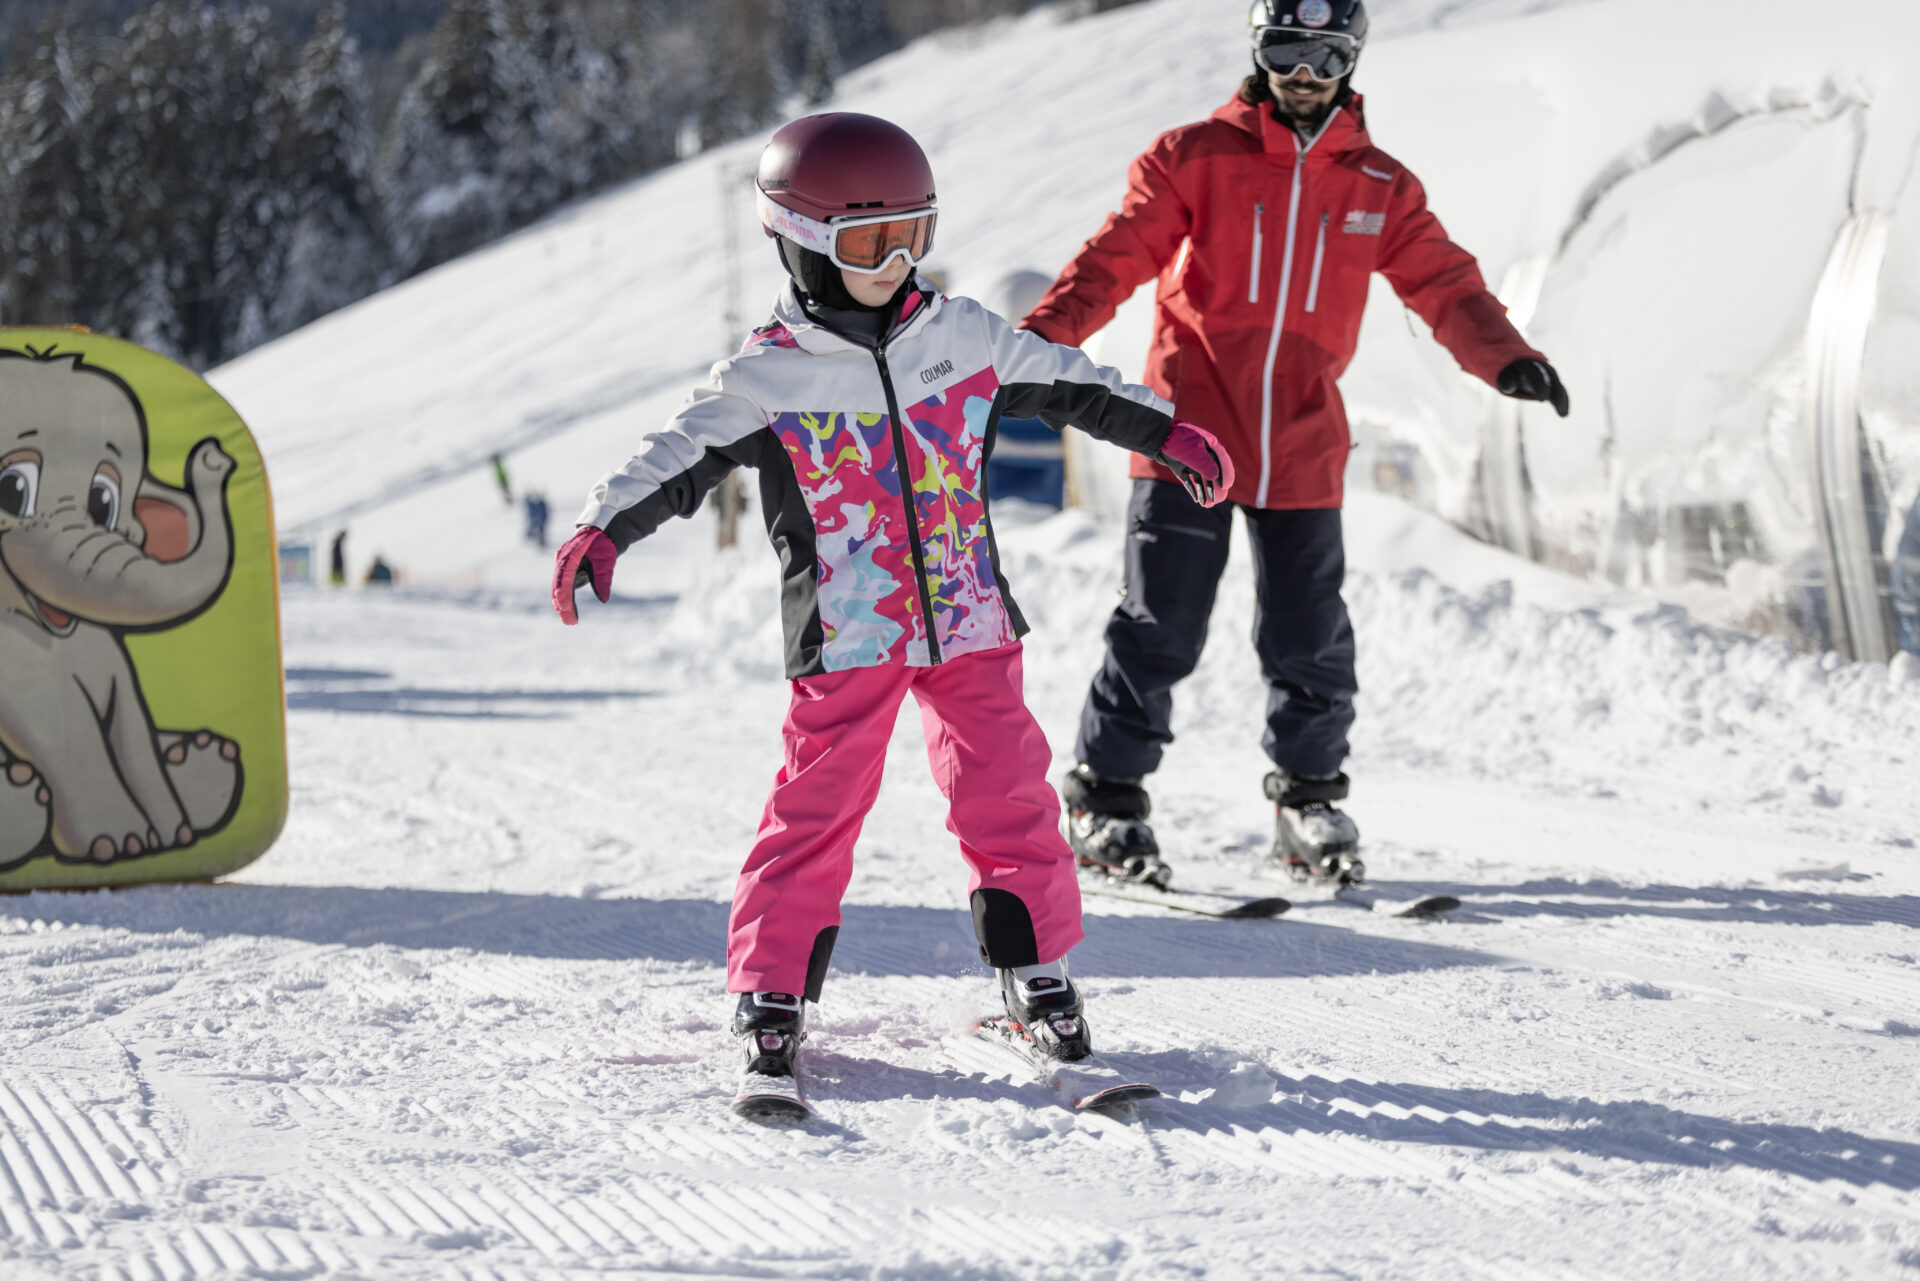 Impressionen eines jungen Mädchens auf Skiern.